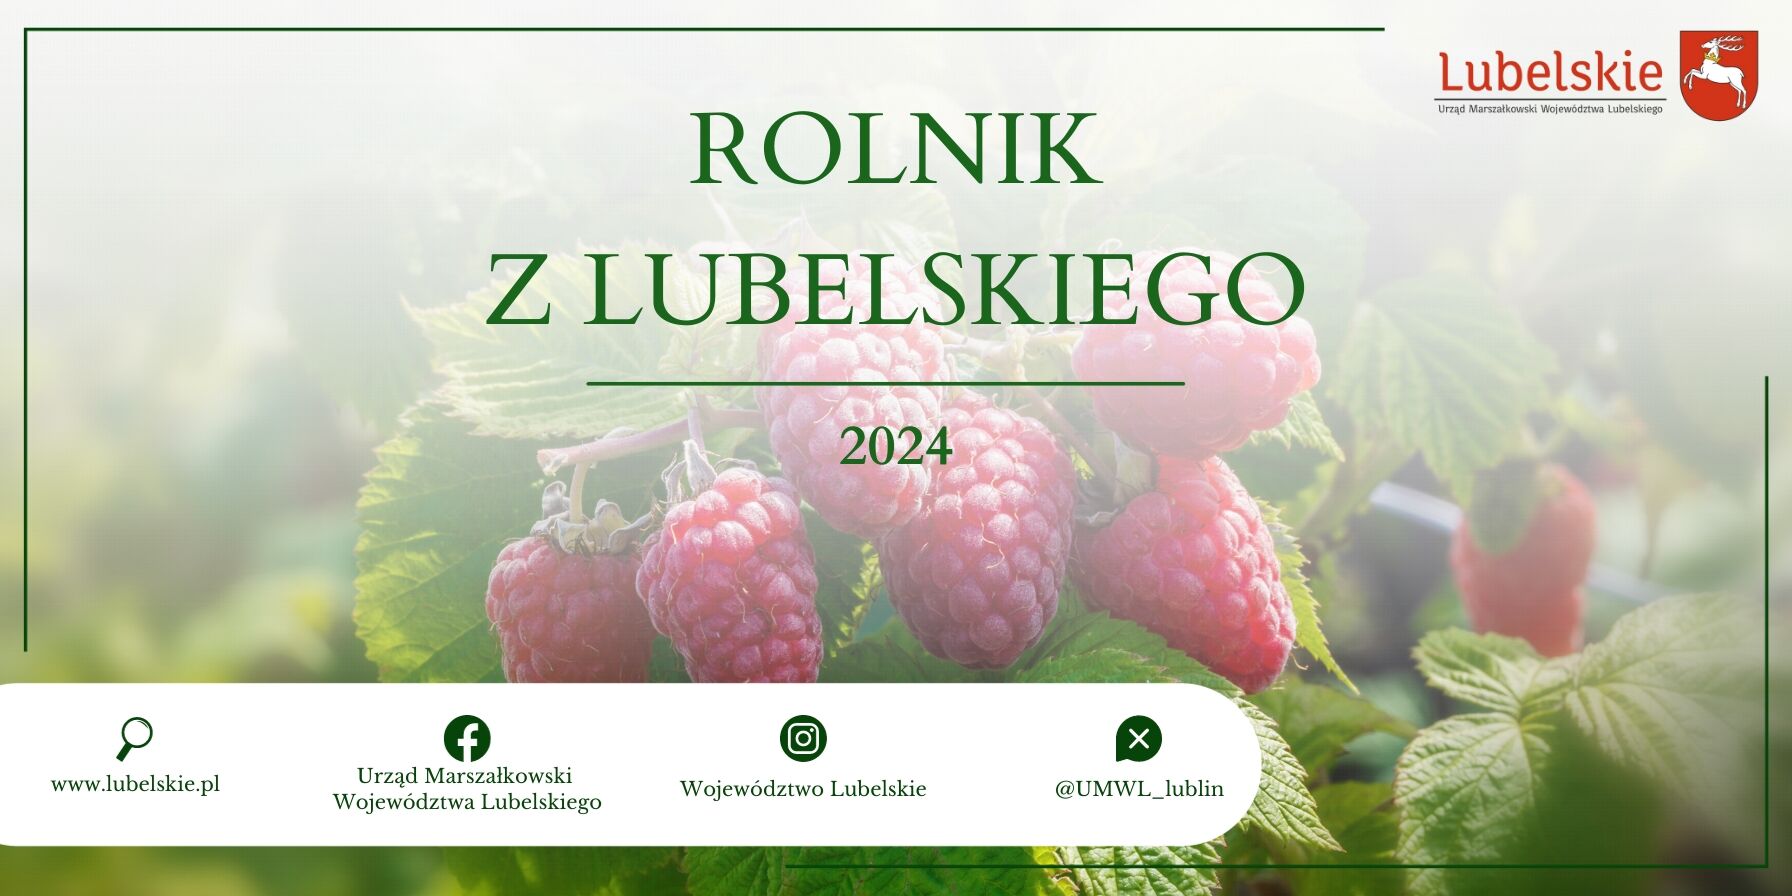 Baner promocyjny z napisem "ROLNIK Z LUBELSKIEGO 2024" z wizerunkiem malin w tle oraz logo i adresami stron organizacji.